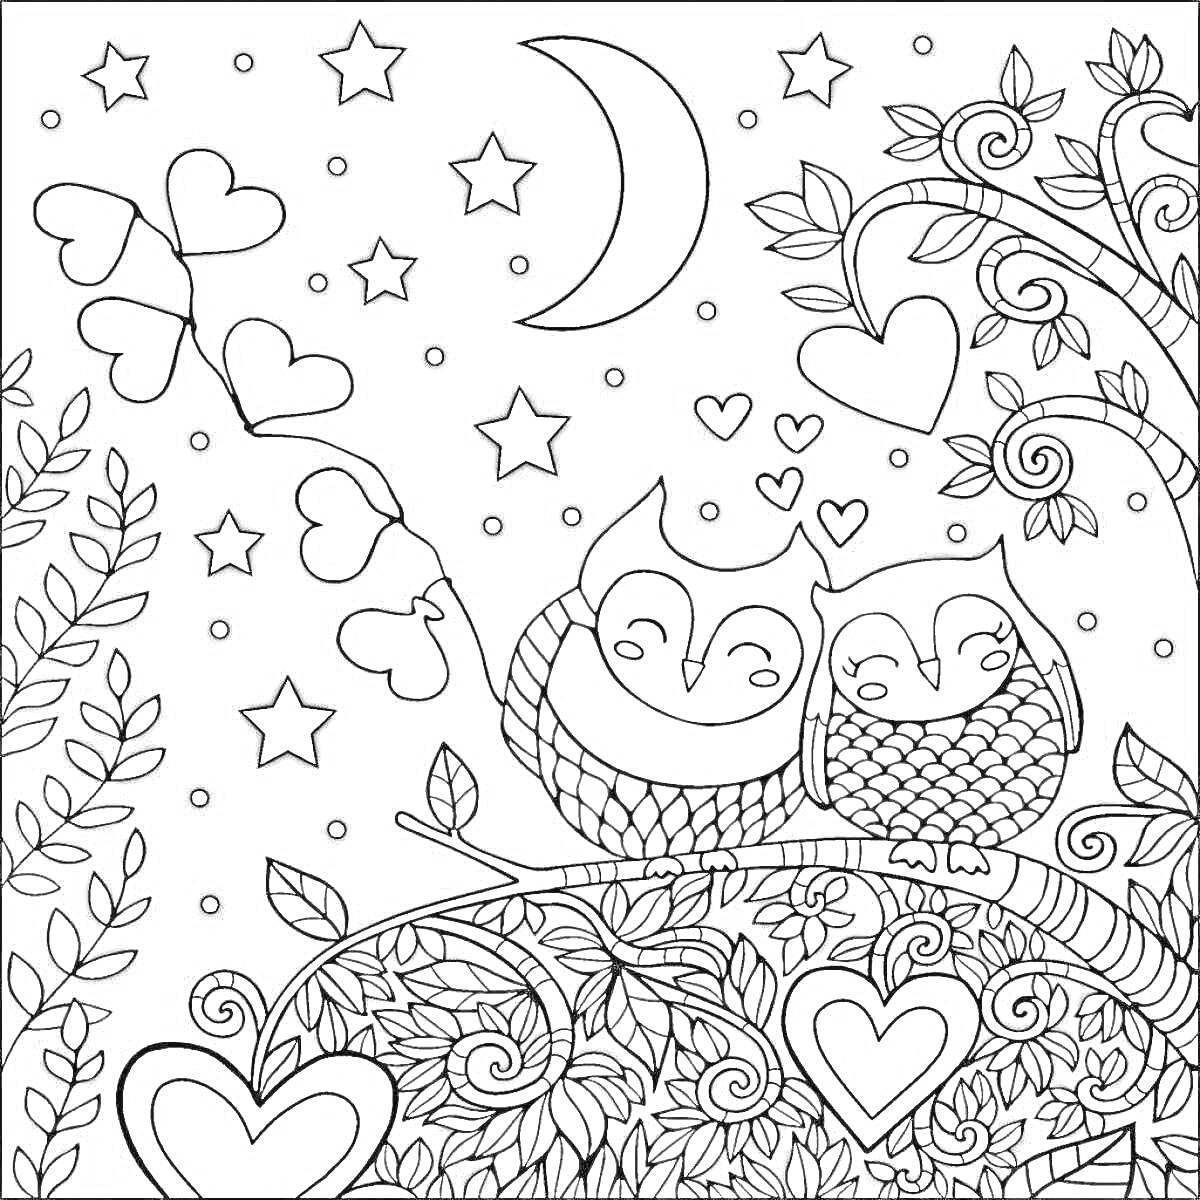 Раскраска две совы на ветке среди листьев и сердец под ночным небом с луной и звёздами